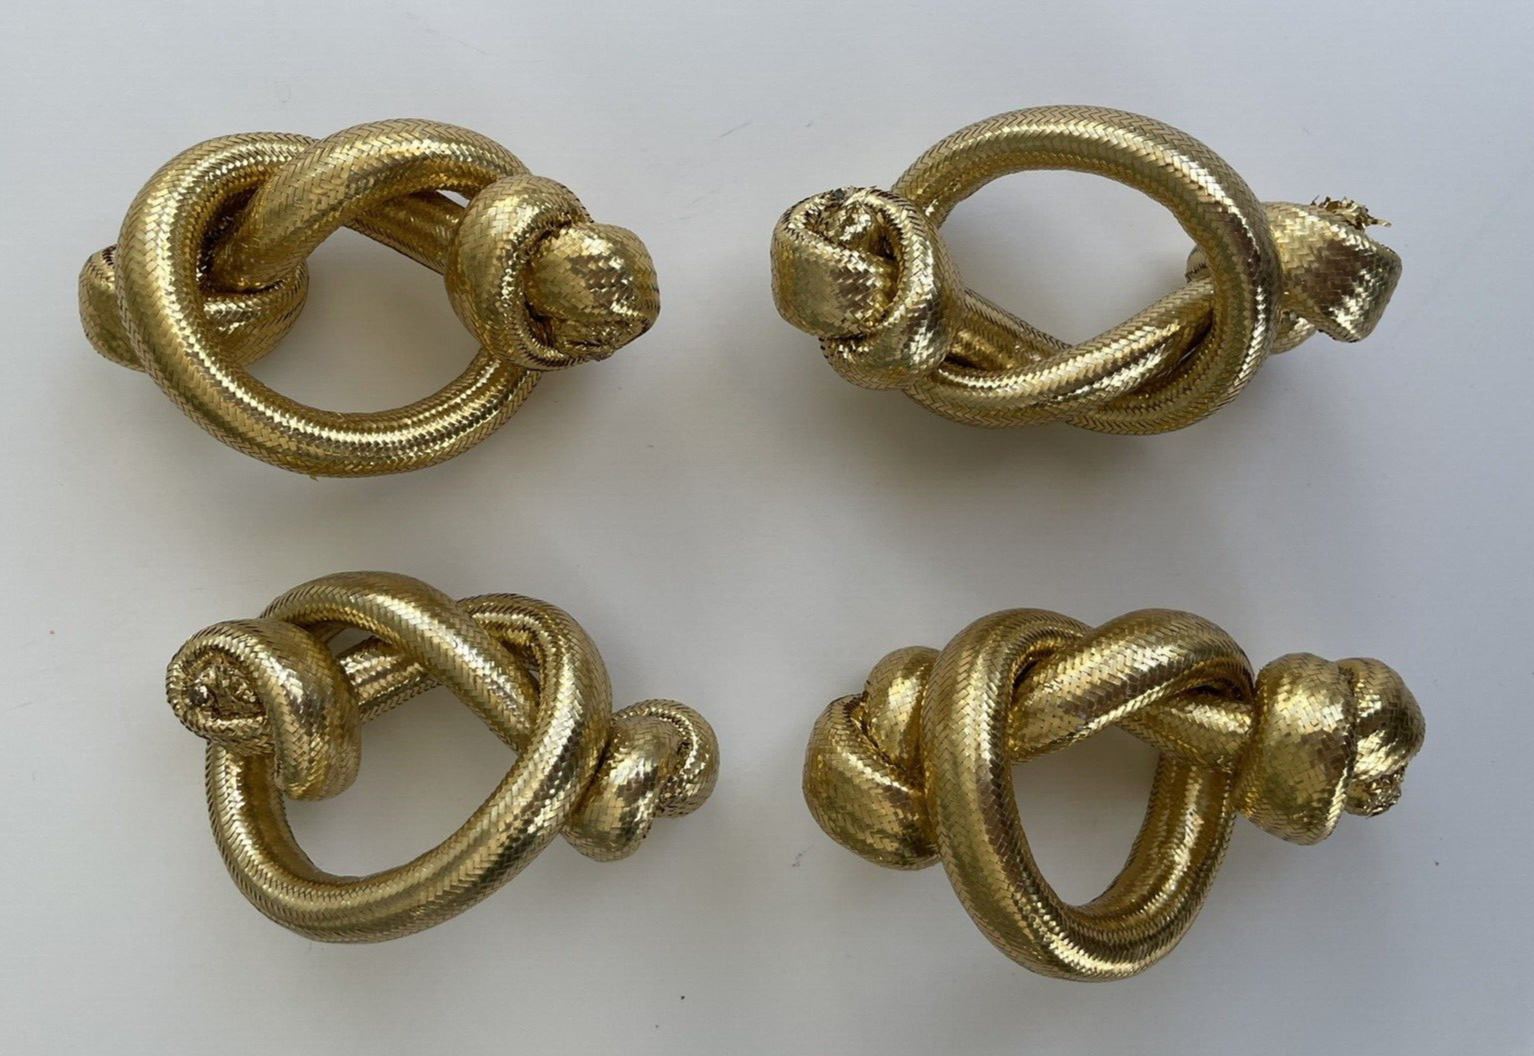 NWOT Vintage 1980s Modernist Gold Lame Knot Napkin Rings